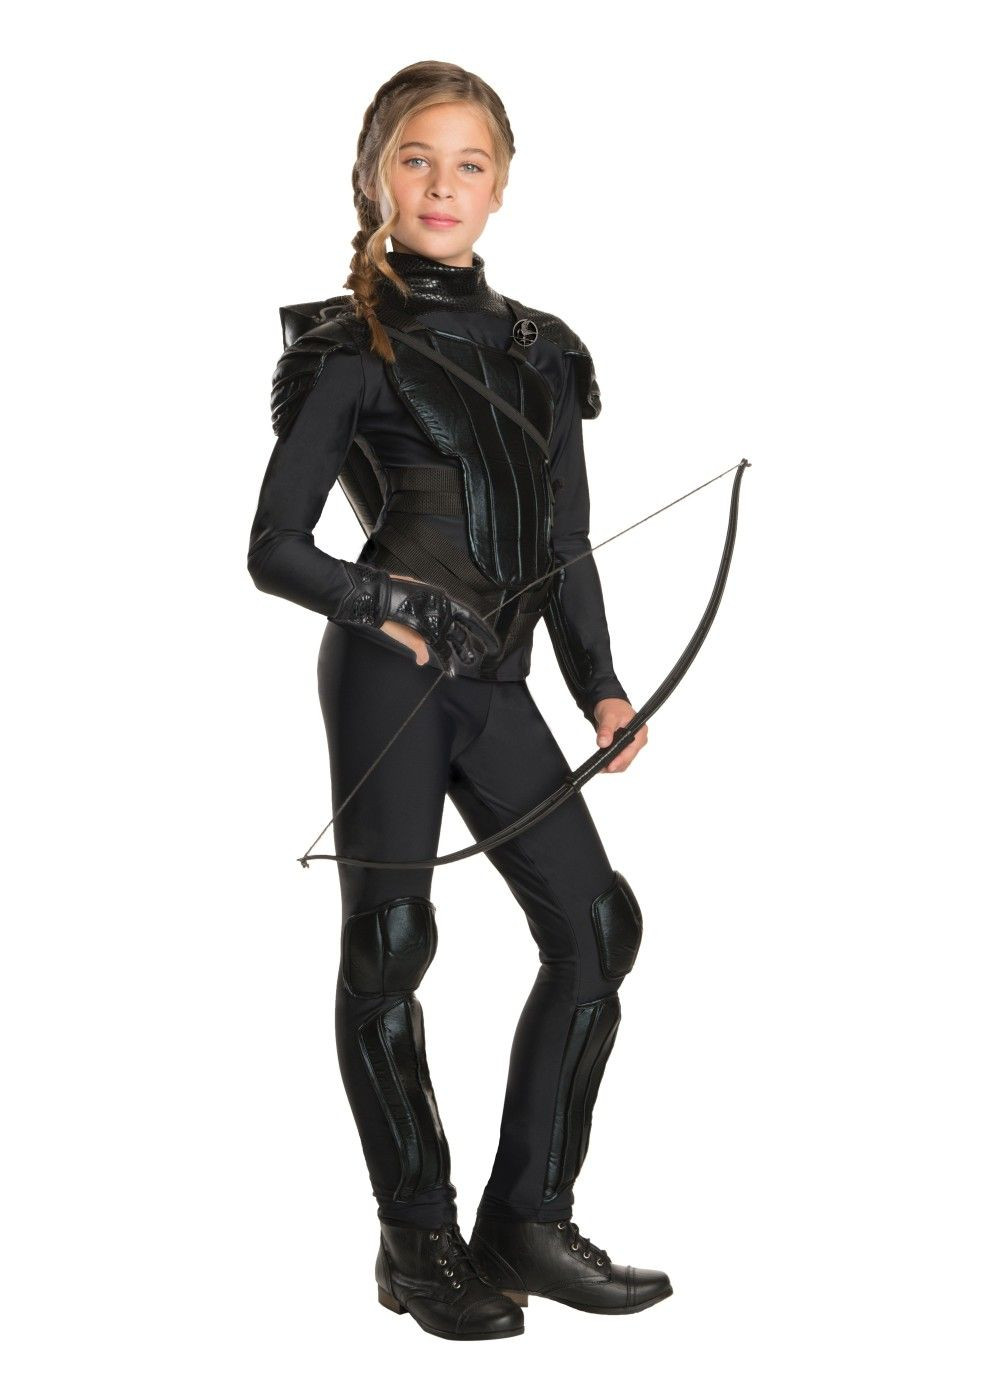 DIY Katniss Everdeen Costume
 Katniss Everdeen Costume thehungergames